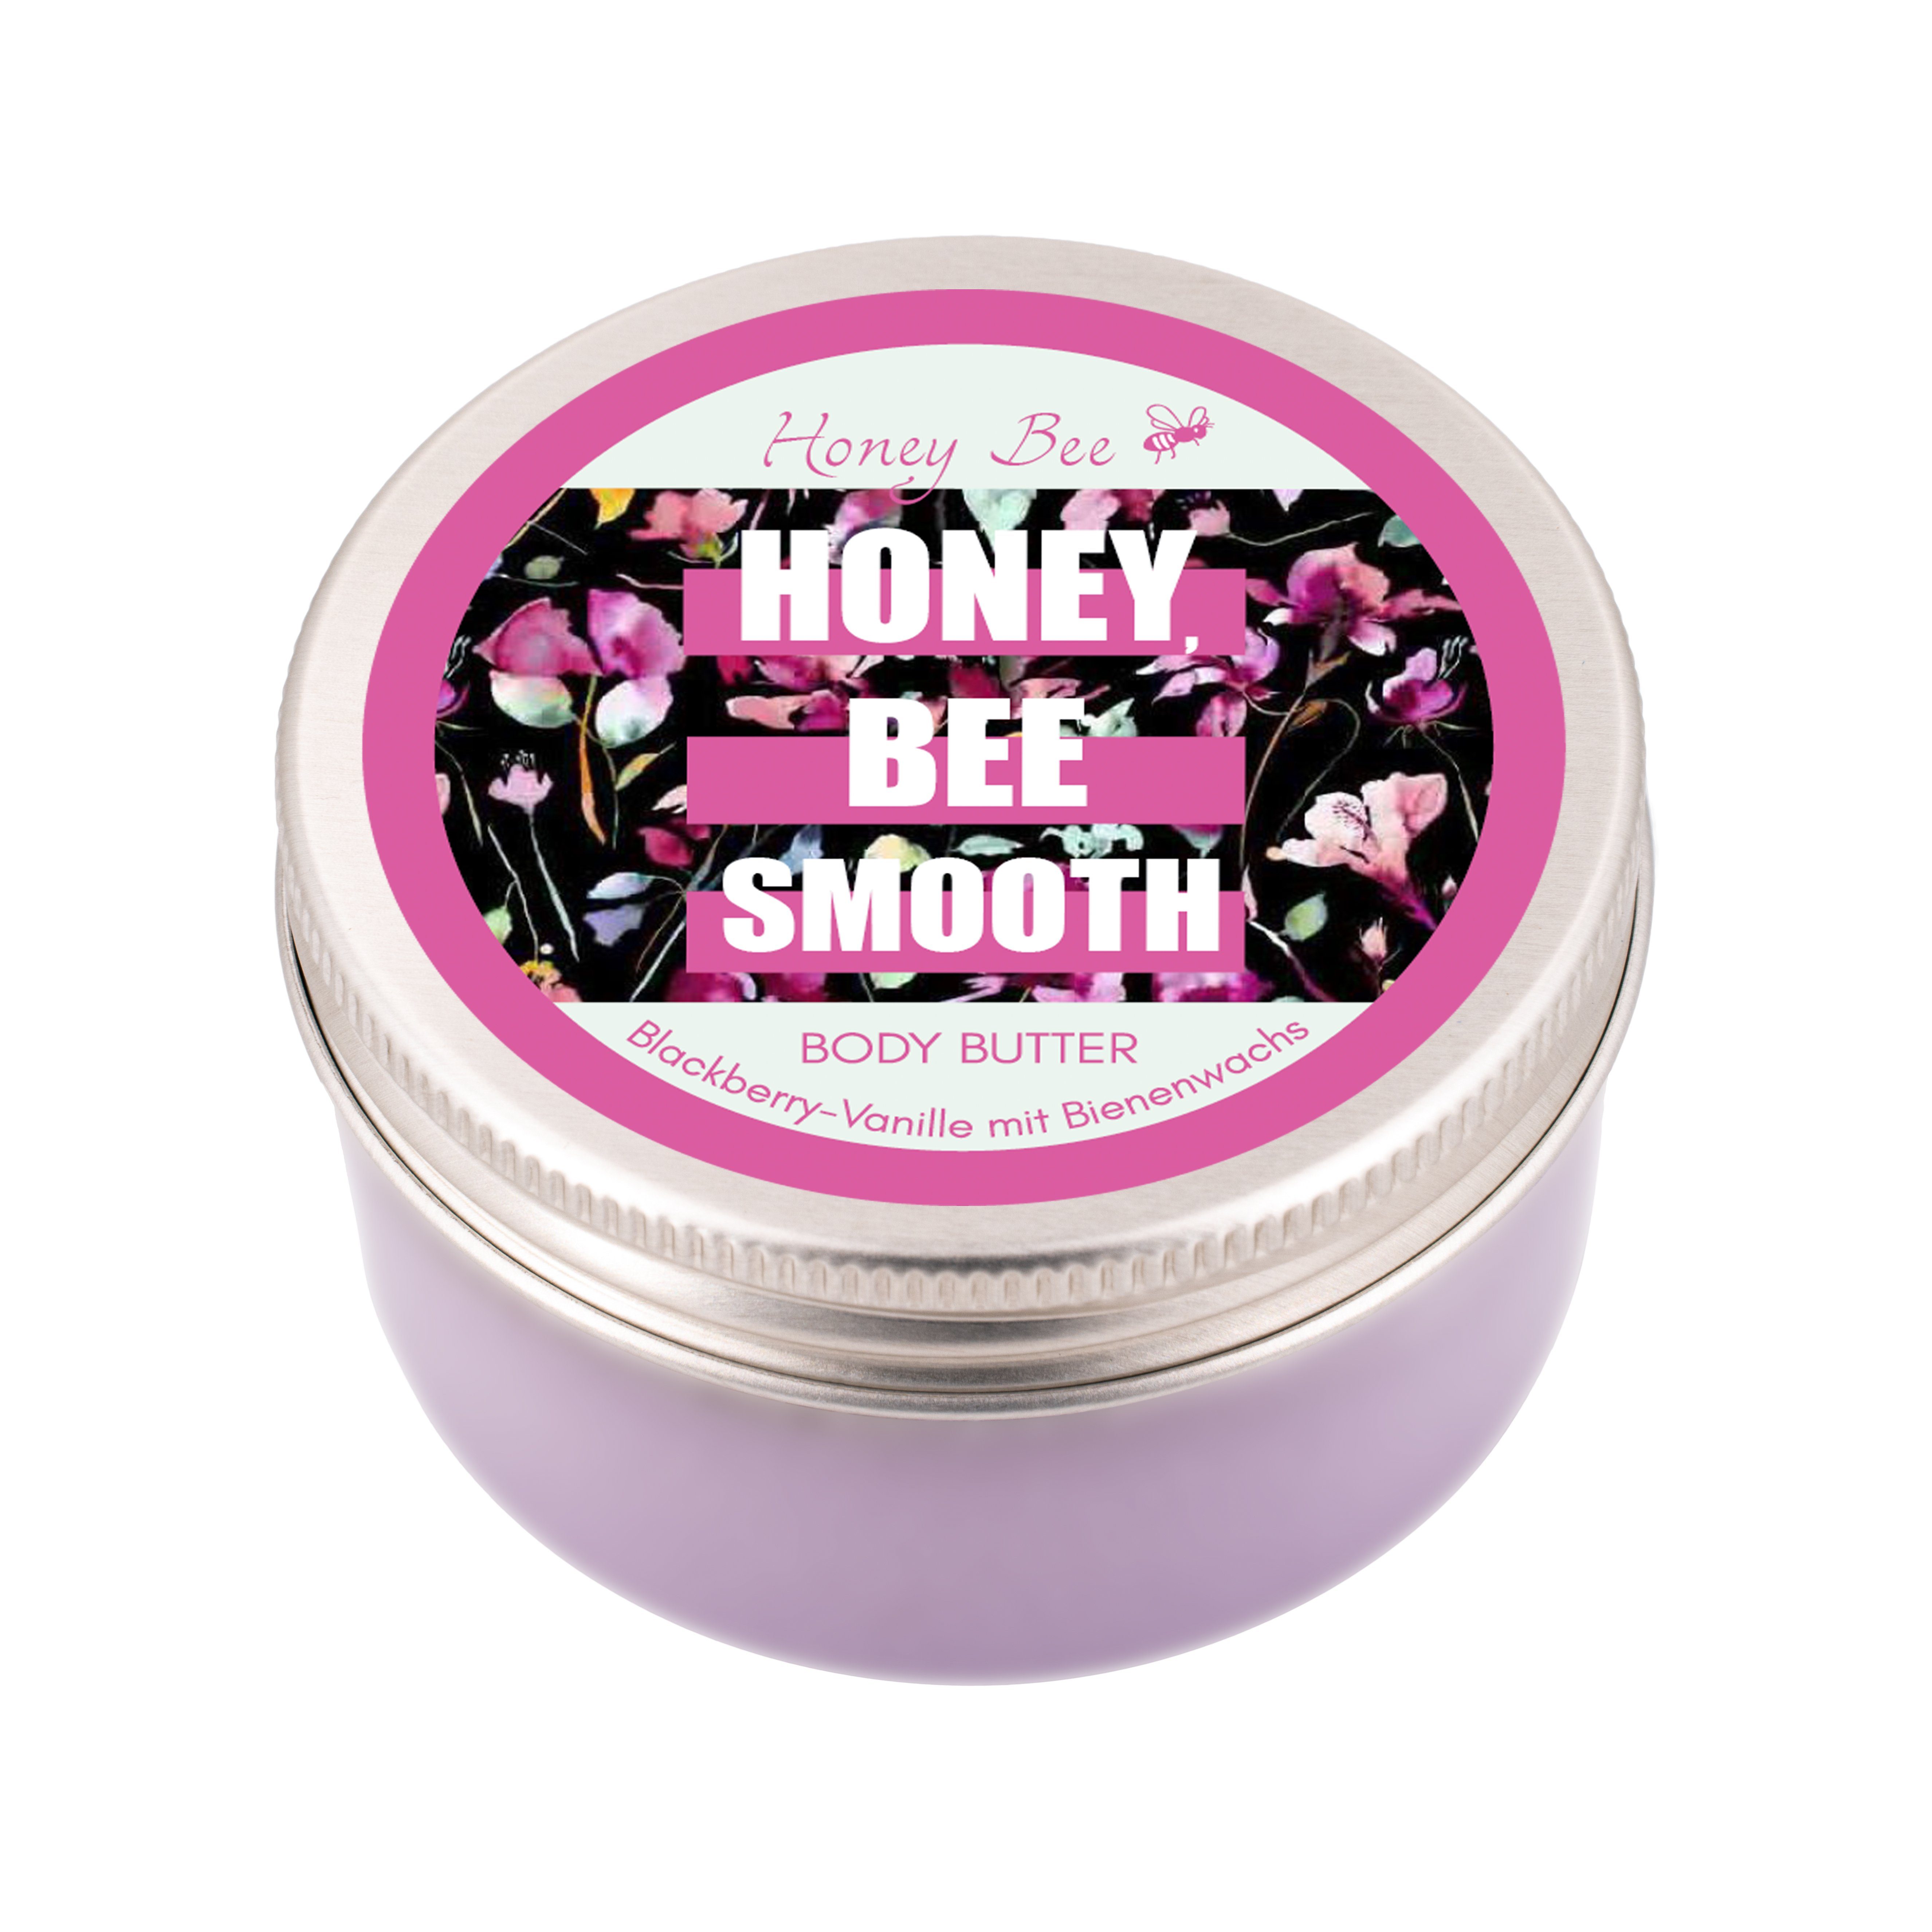 Naturkosmetik Cosmetics reichhaltig Matica Gesichtreinigungs-Set Bee Honey Super Set, Beauty